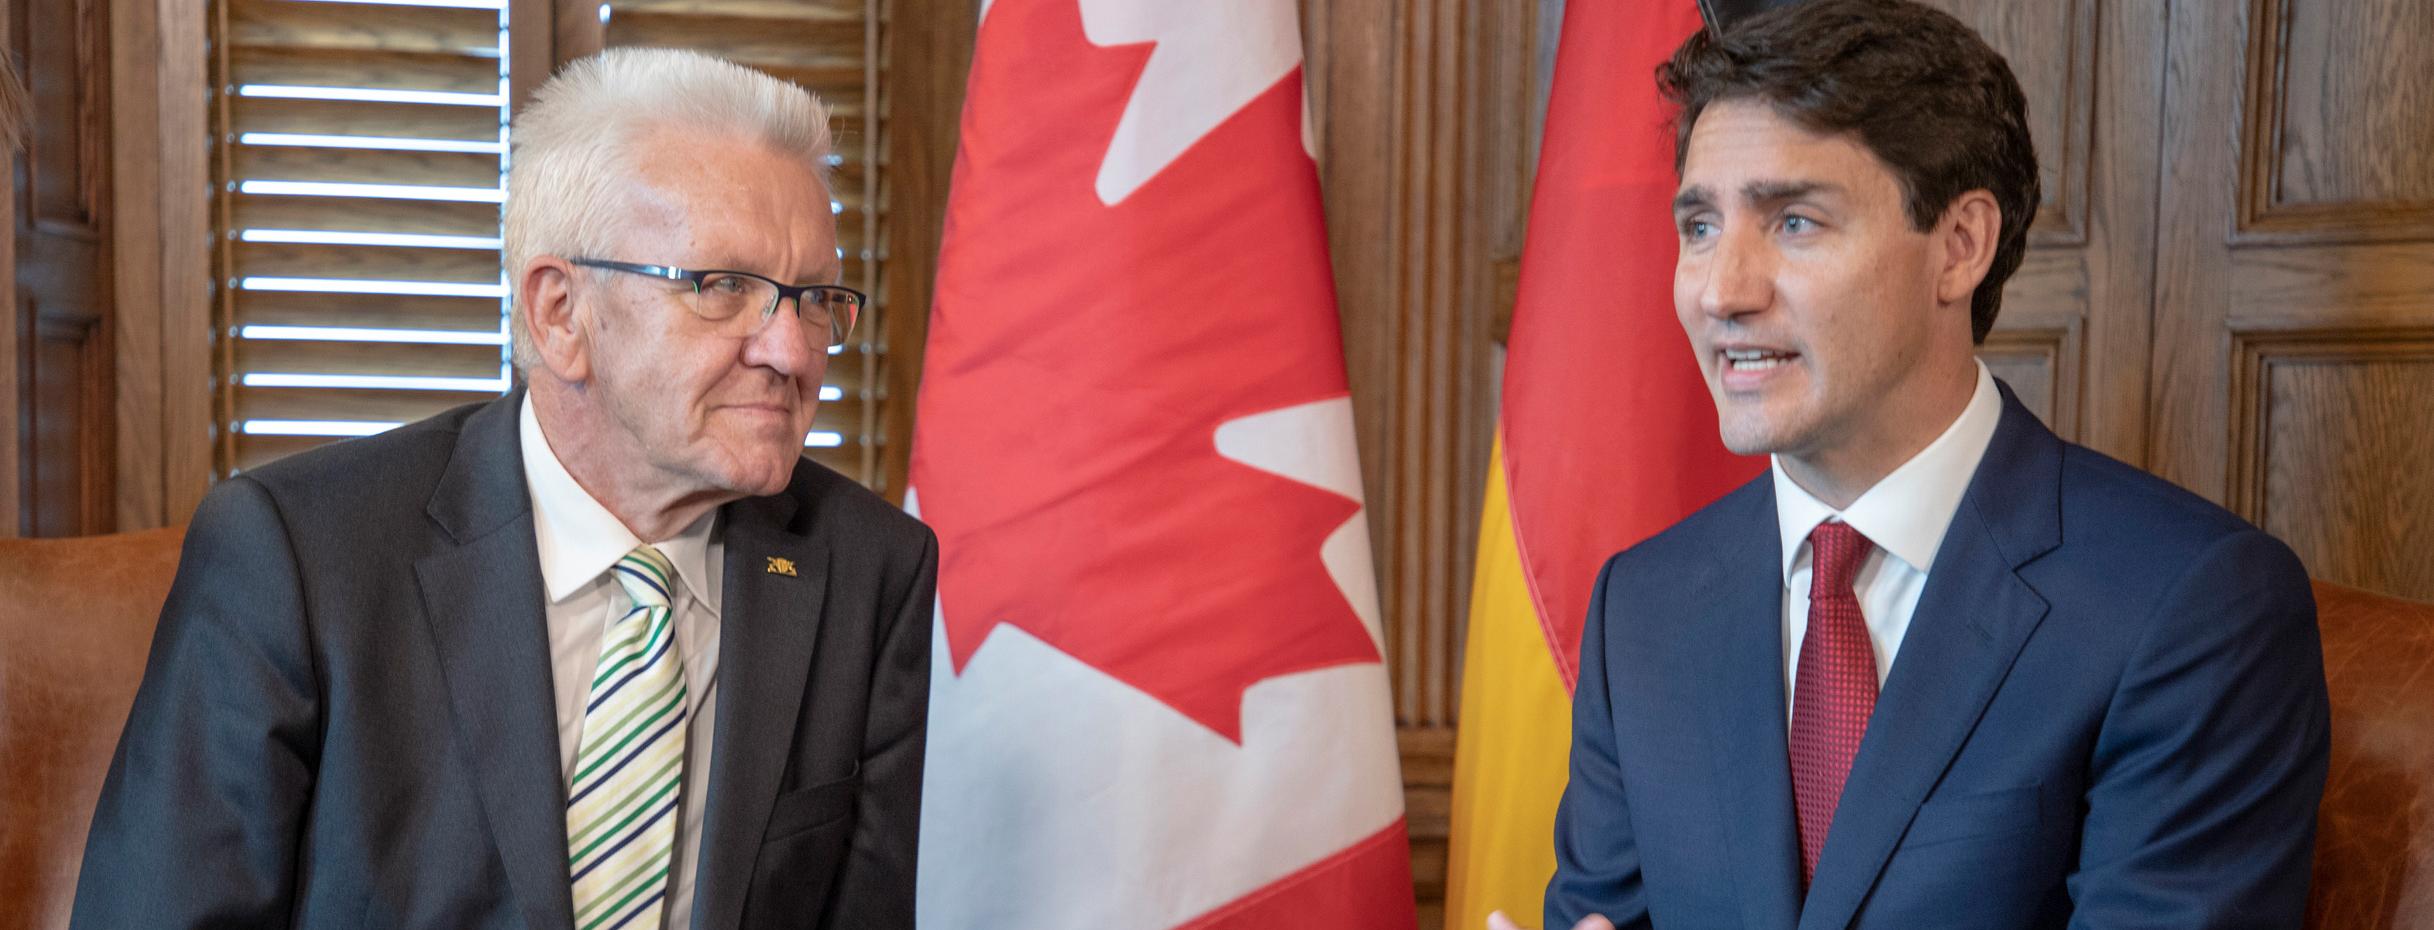 Ministerpräsident Winfried Kretschmann (l.) im Gespräch mit dem kanadischen Premierminister Justin Trudeau (r.) in Ottawa (Bild: Staatsministerium Baden-Württemberg)